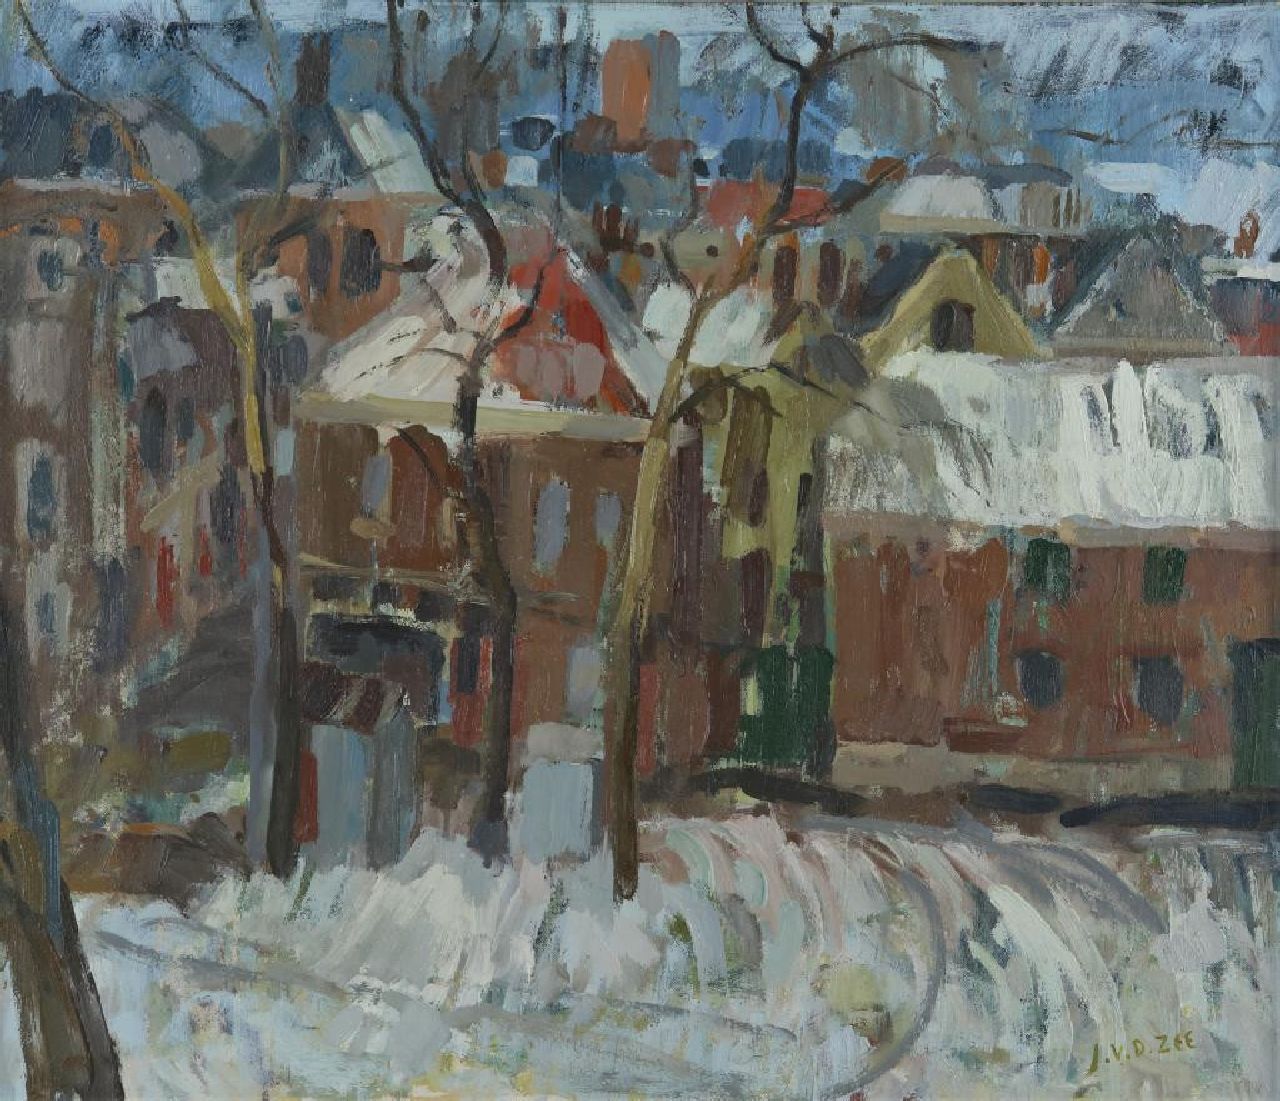 Zee J. van der | Jan van der Zee | Schilderijen te koop aangeboden | Stadsgezicht Groningen in de sneeuw  i.o., olieverf op doek 59,8 x 70,1 cm, gesigneerd rechtsonder